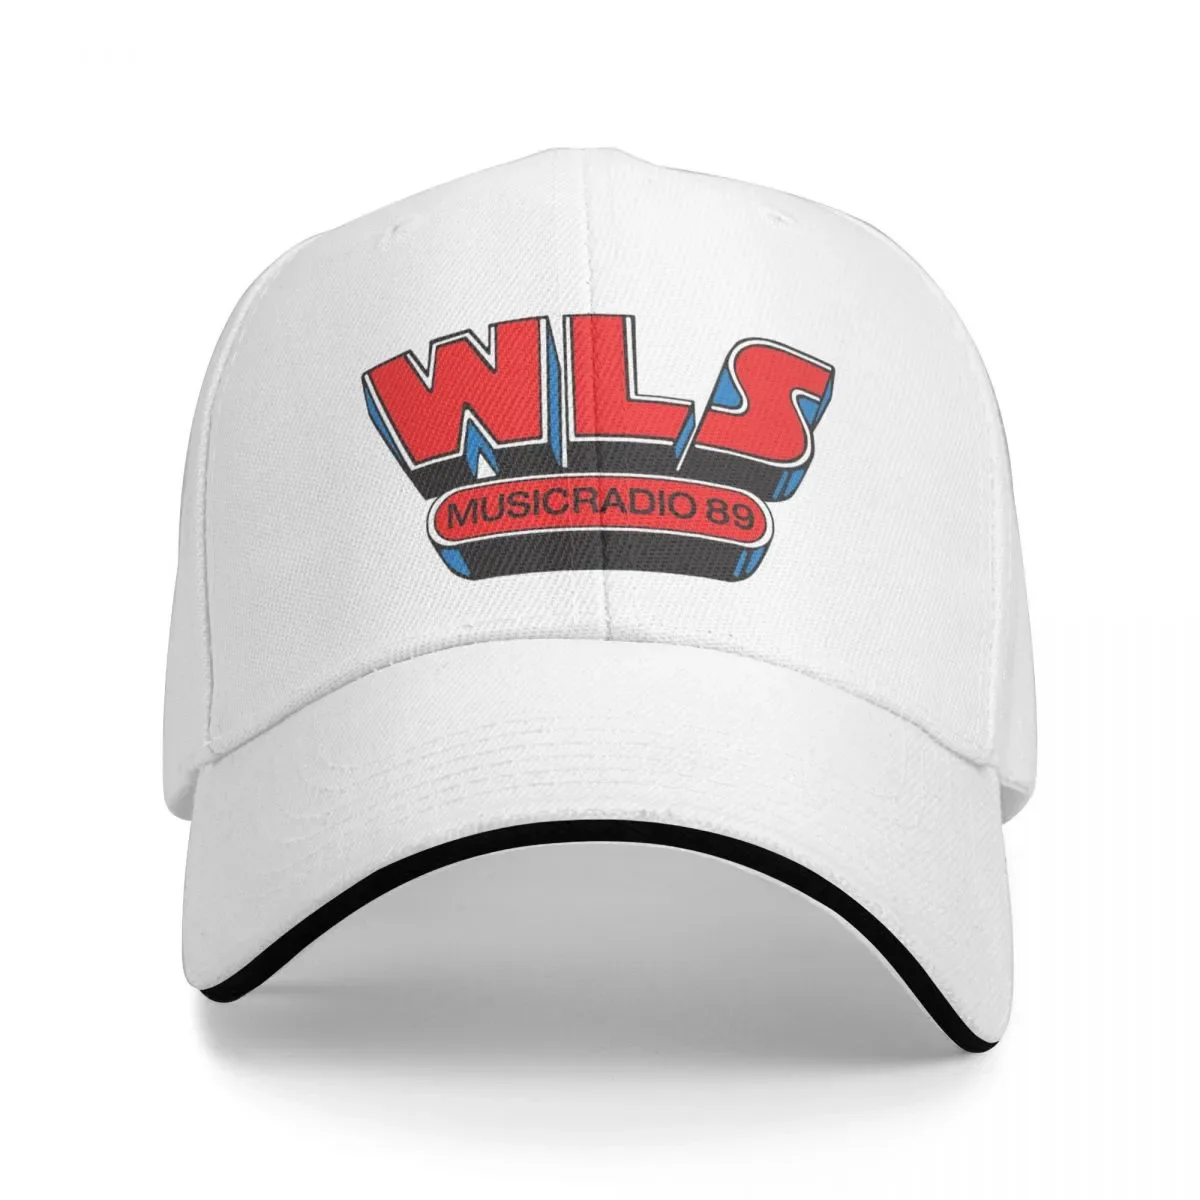 

New WLS MusicRadio Chicago Cap Baseball Cap Golf hat man dropshipping Men golf wear Women's